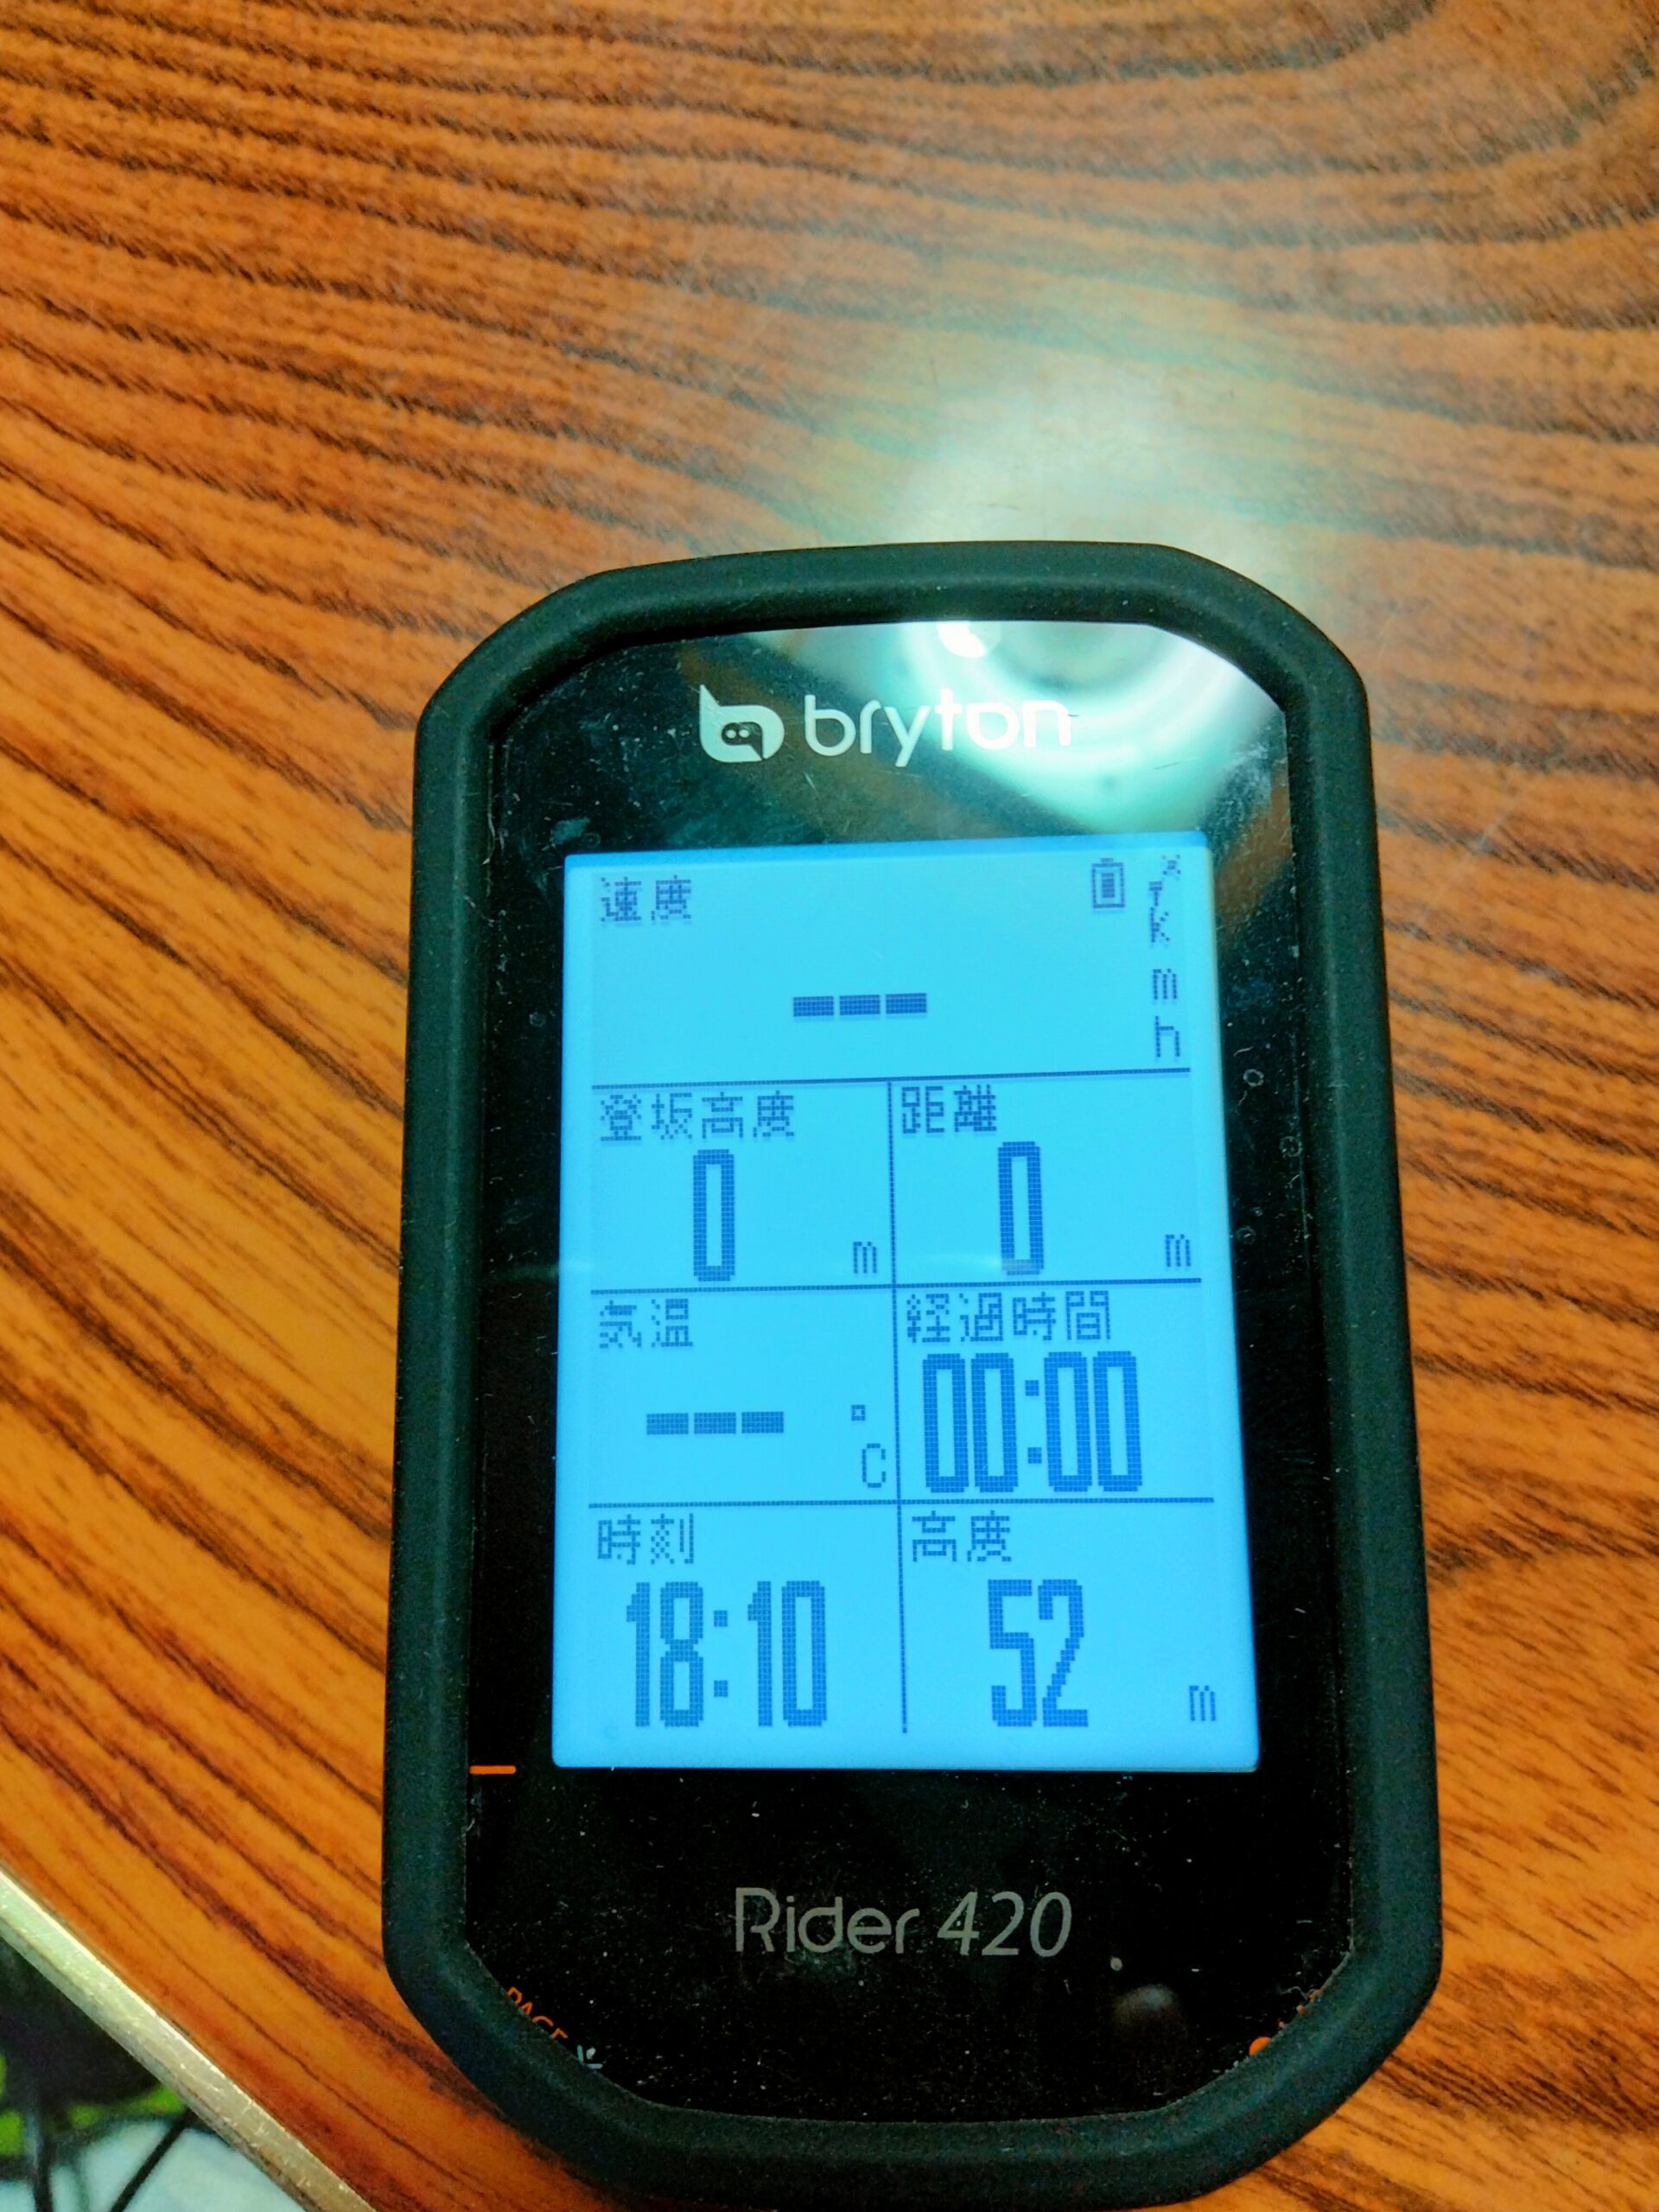 レビュー】bryton rider420 サイクルコンピューター | 自転車旅行研究会